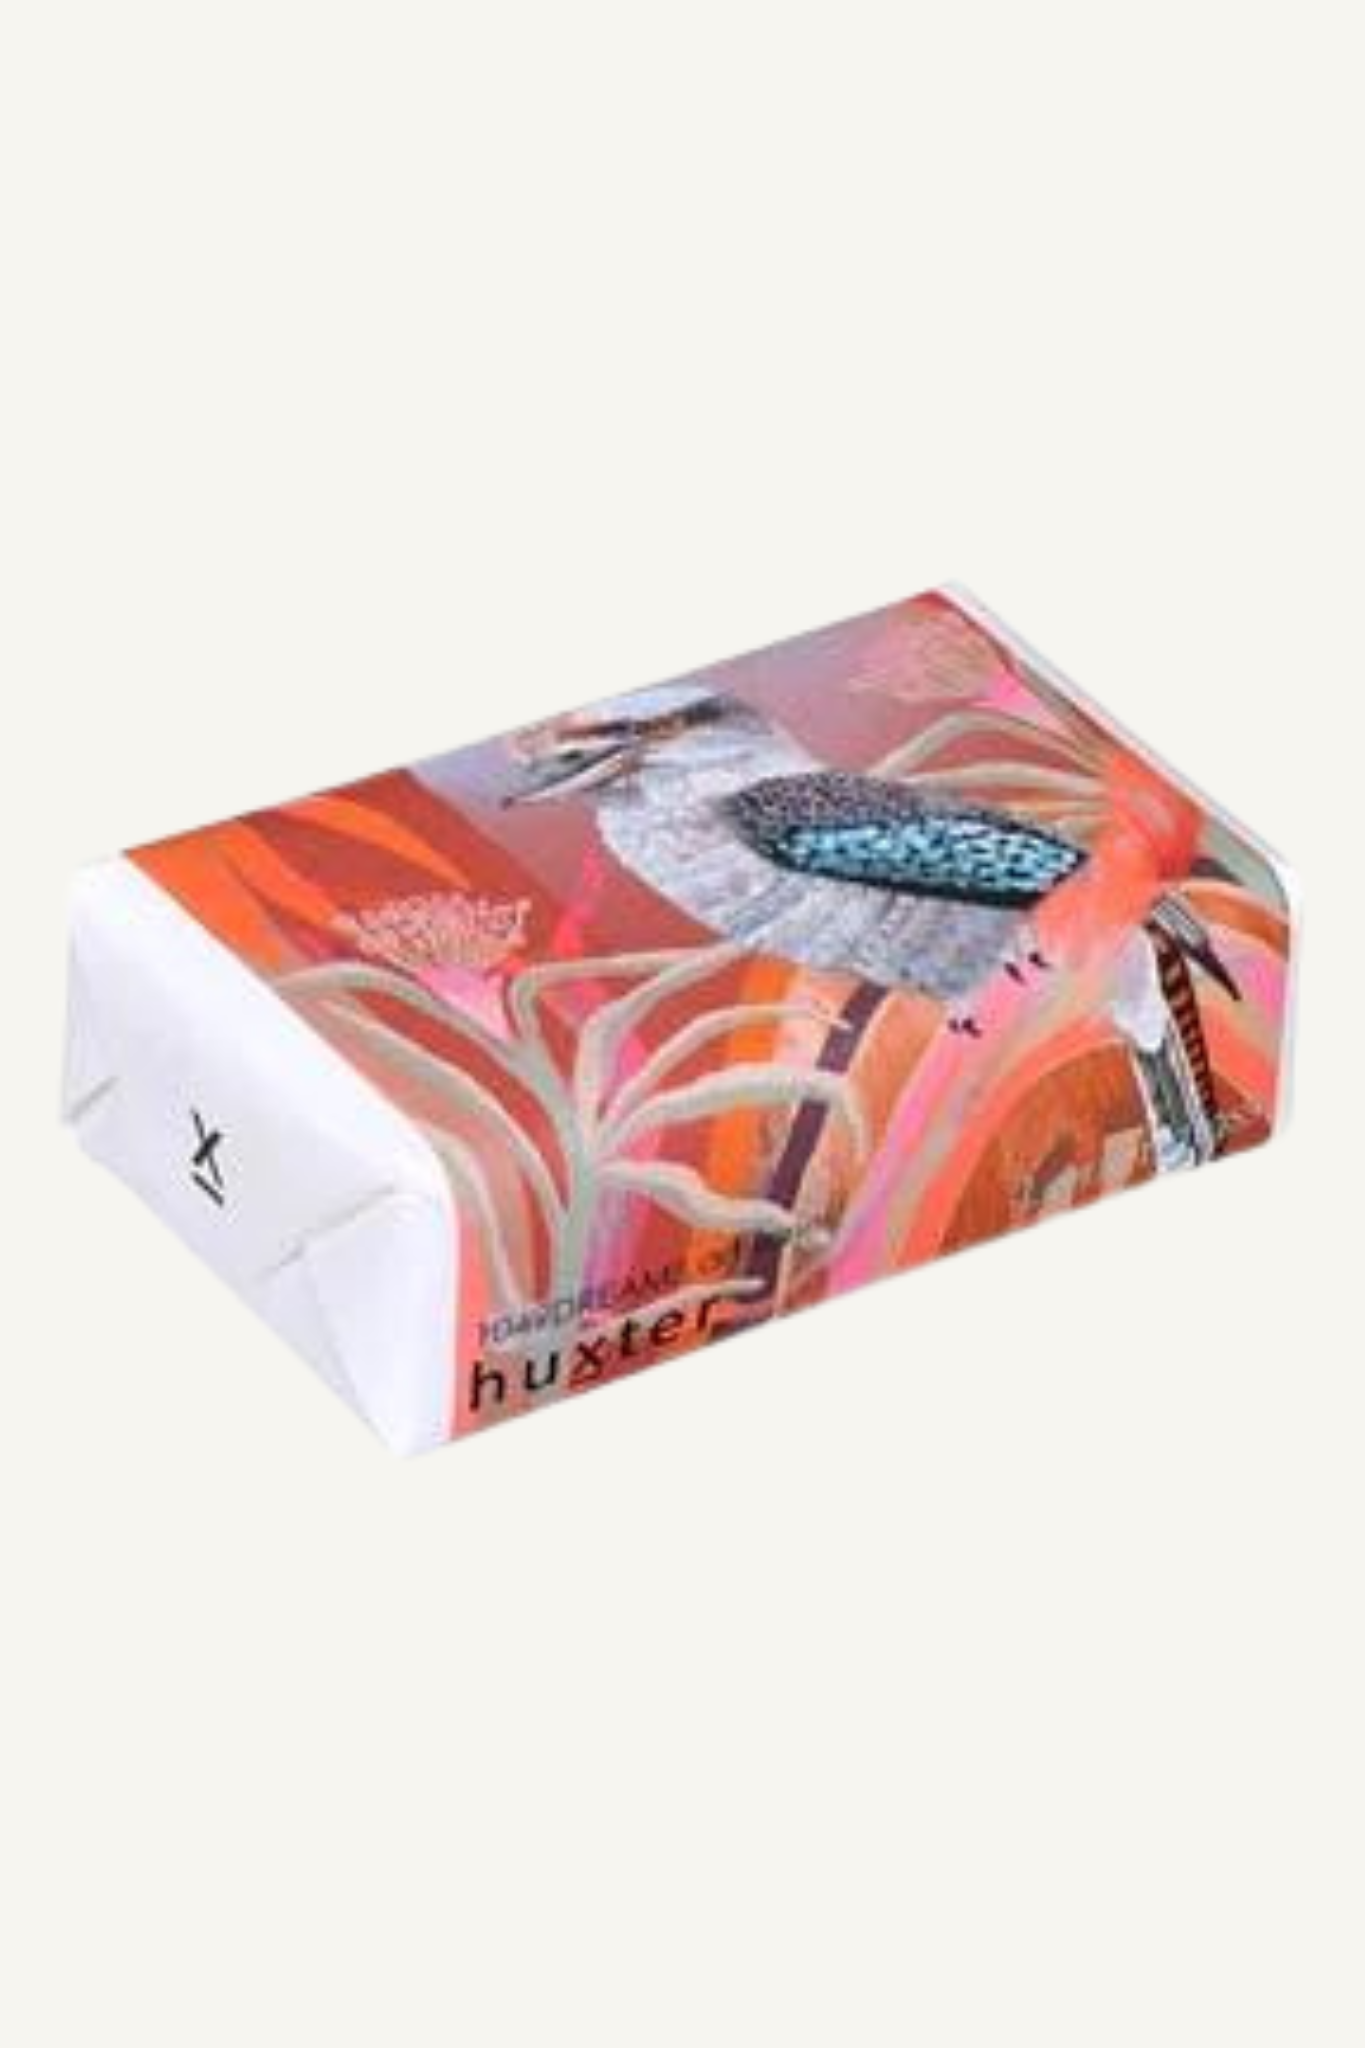 Huxter Dreams 'Kookaburra' Soap